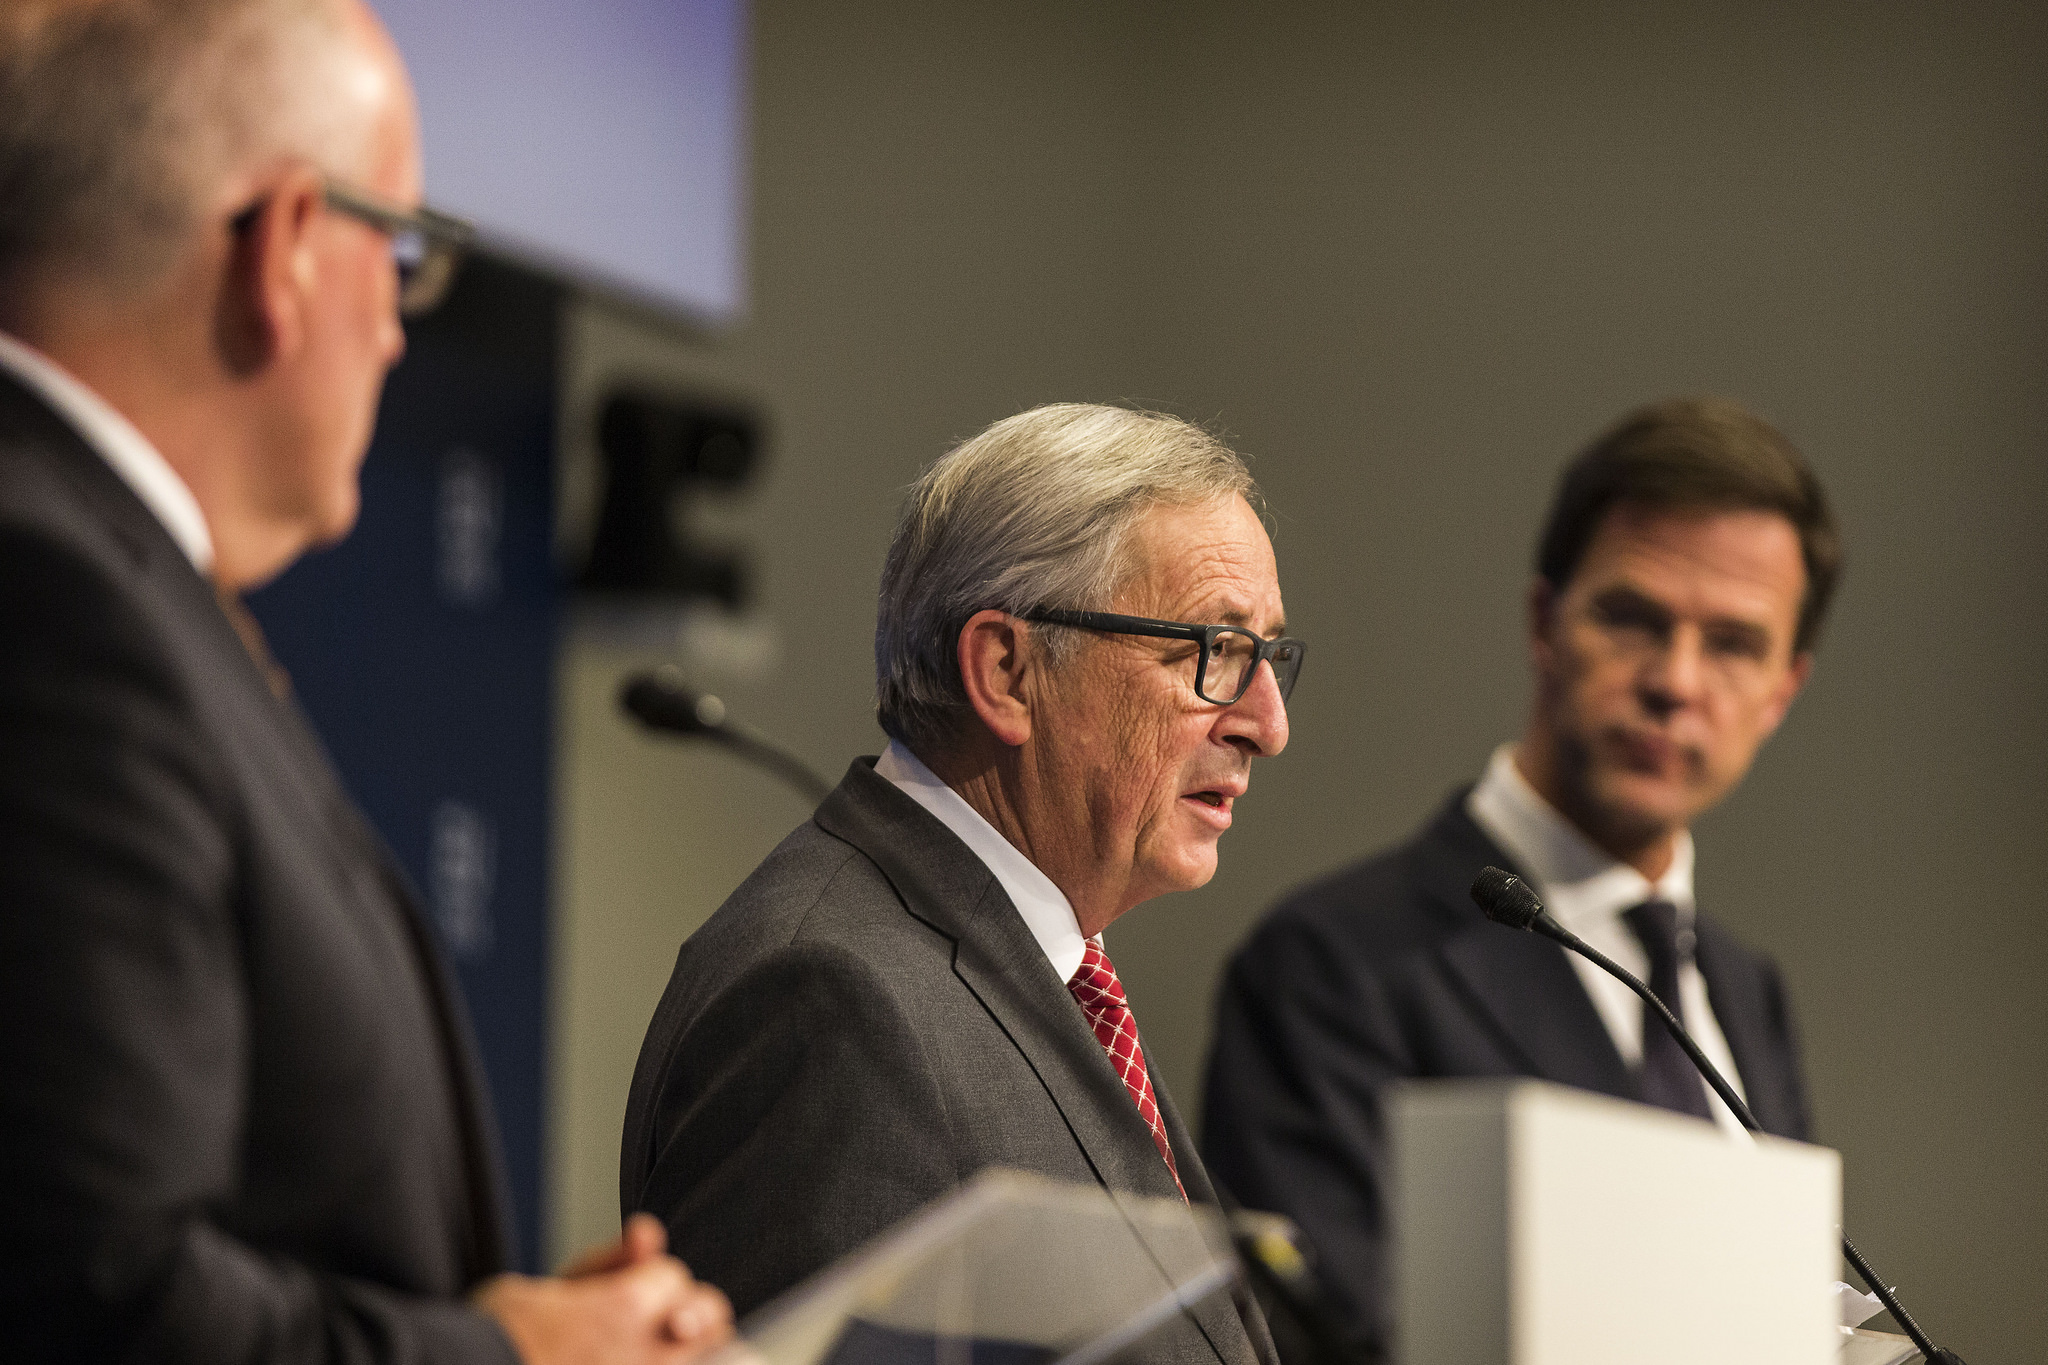 De Juncker-scenario’s zijn een goed startpunt voor het debat over de toekomst van de EU. Bron: EU2016 NL